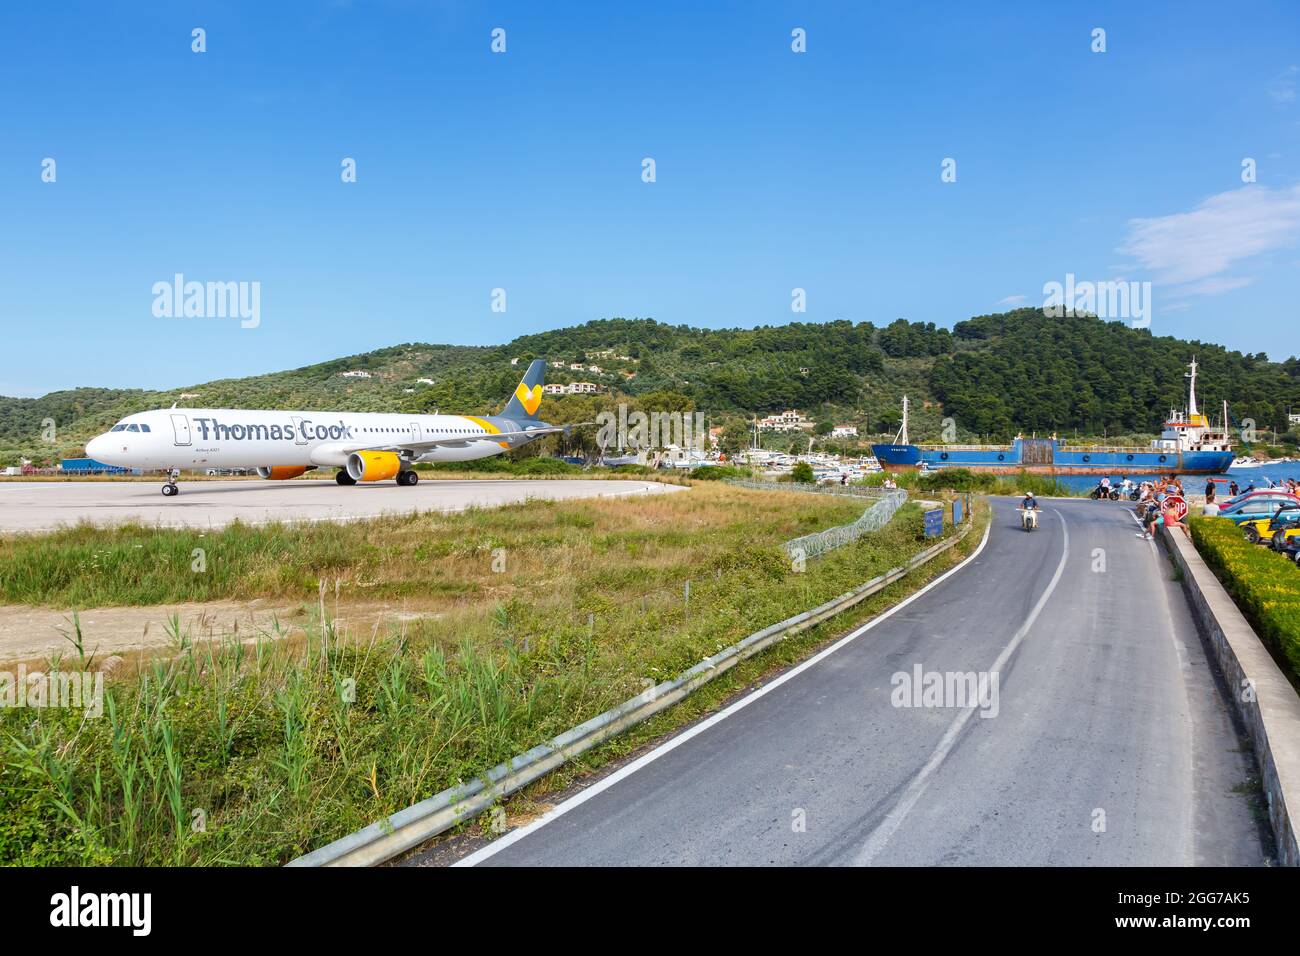 Skiathos, Griechenland - 5. Juni 2016: Thomas Cook Airlines Airbus A321 am Flughafen Skiathos (JSI) in Griechenland. Stockfoto